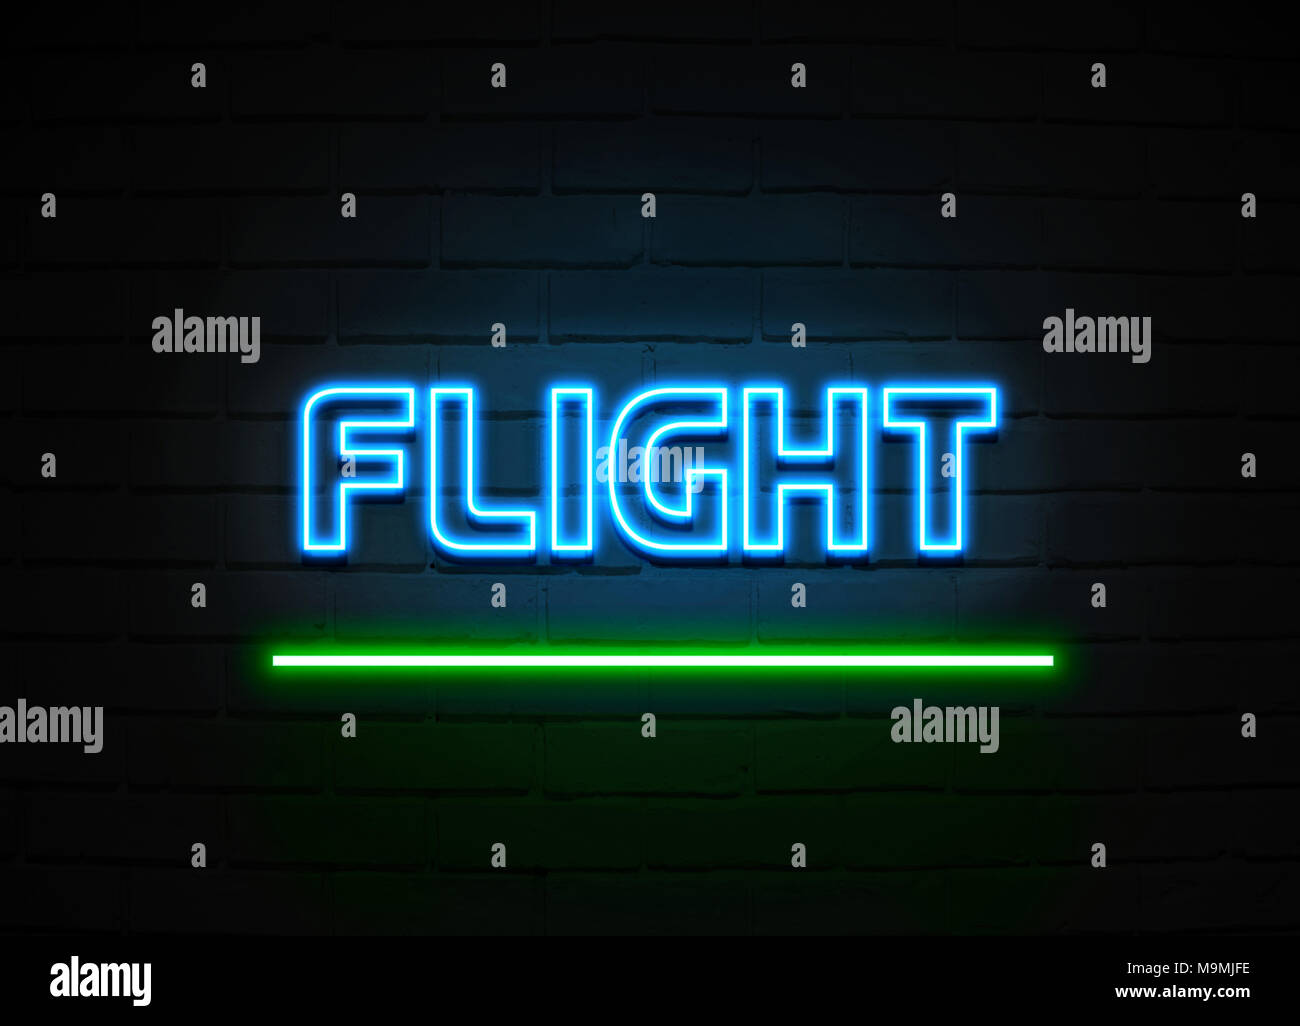 Flug Leuchtreklame - glühende Leuchtreklame auf brickwall Wand - 3D-Royalty Free Stock Illustration dargestellt. Stockfoto